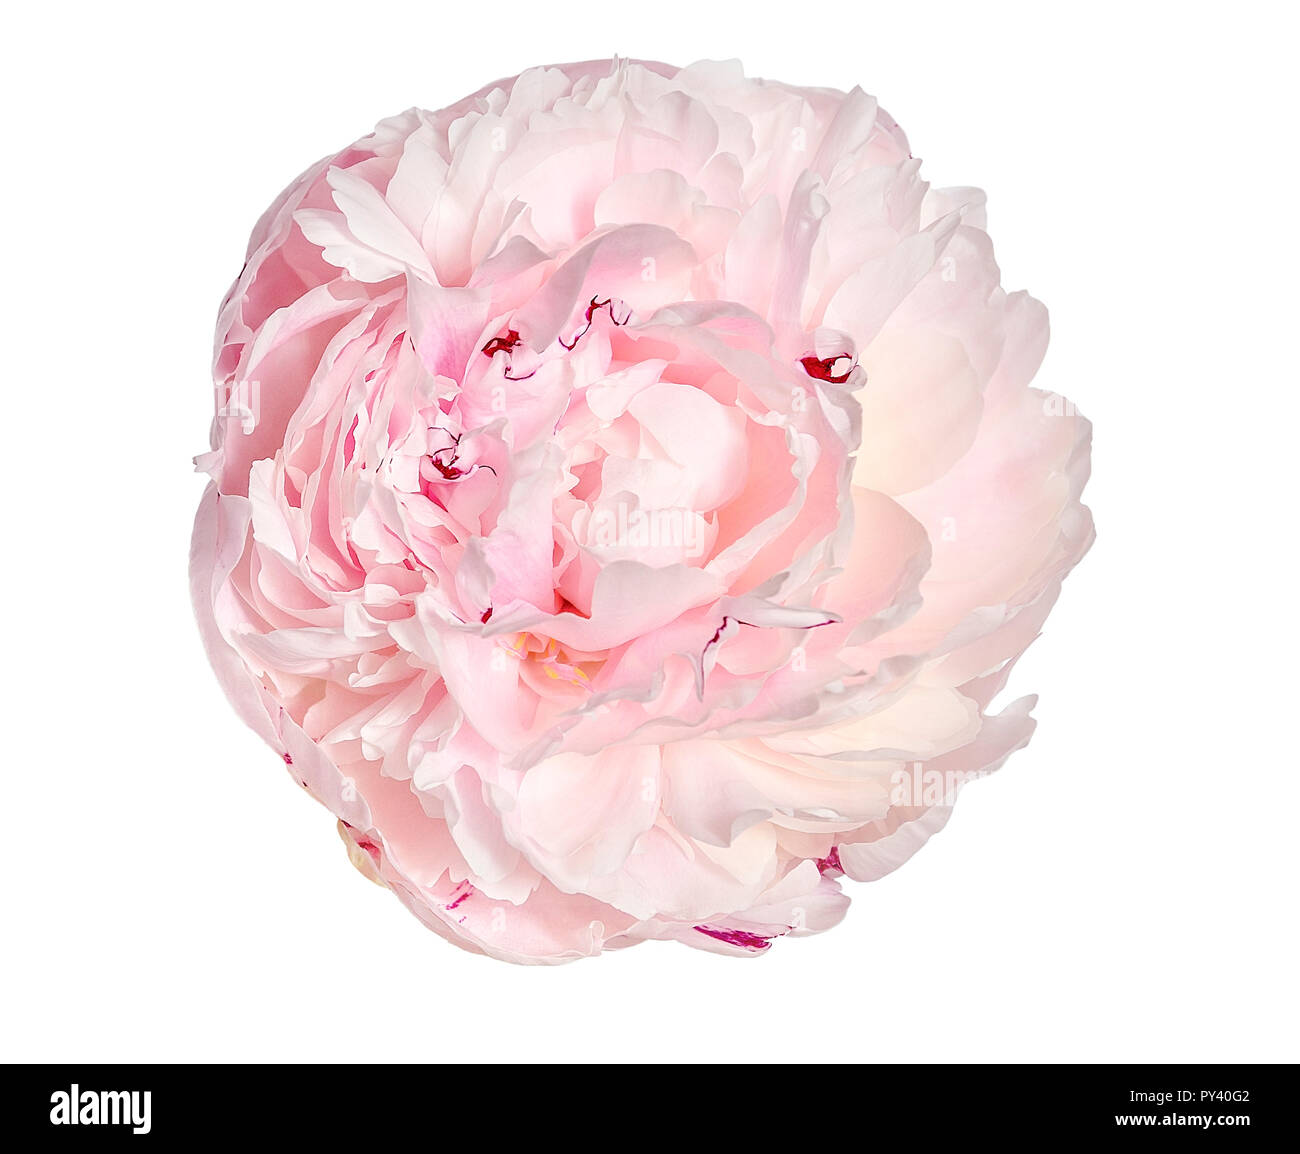 Dolce con rosa peonia cremoso fiore con soffici, frilly petali close up, isolato su sfondo bianco. Romantico motivo floreale Foto Stock